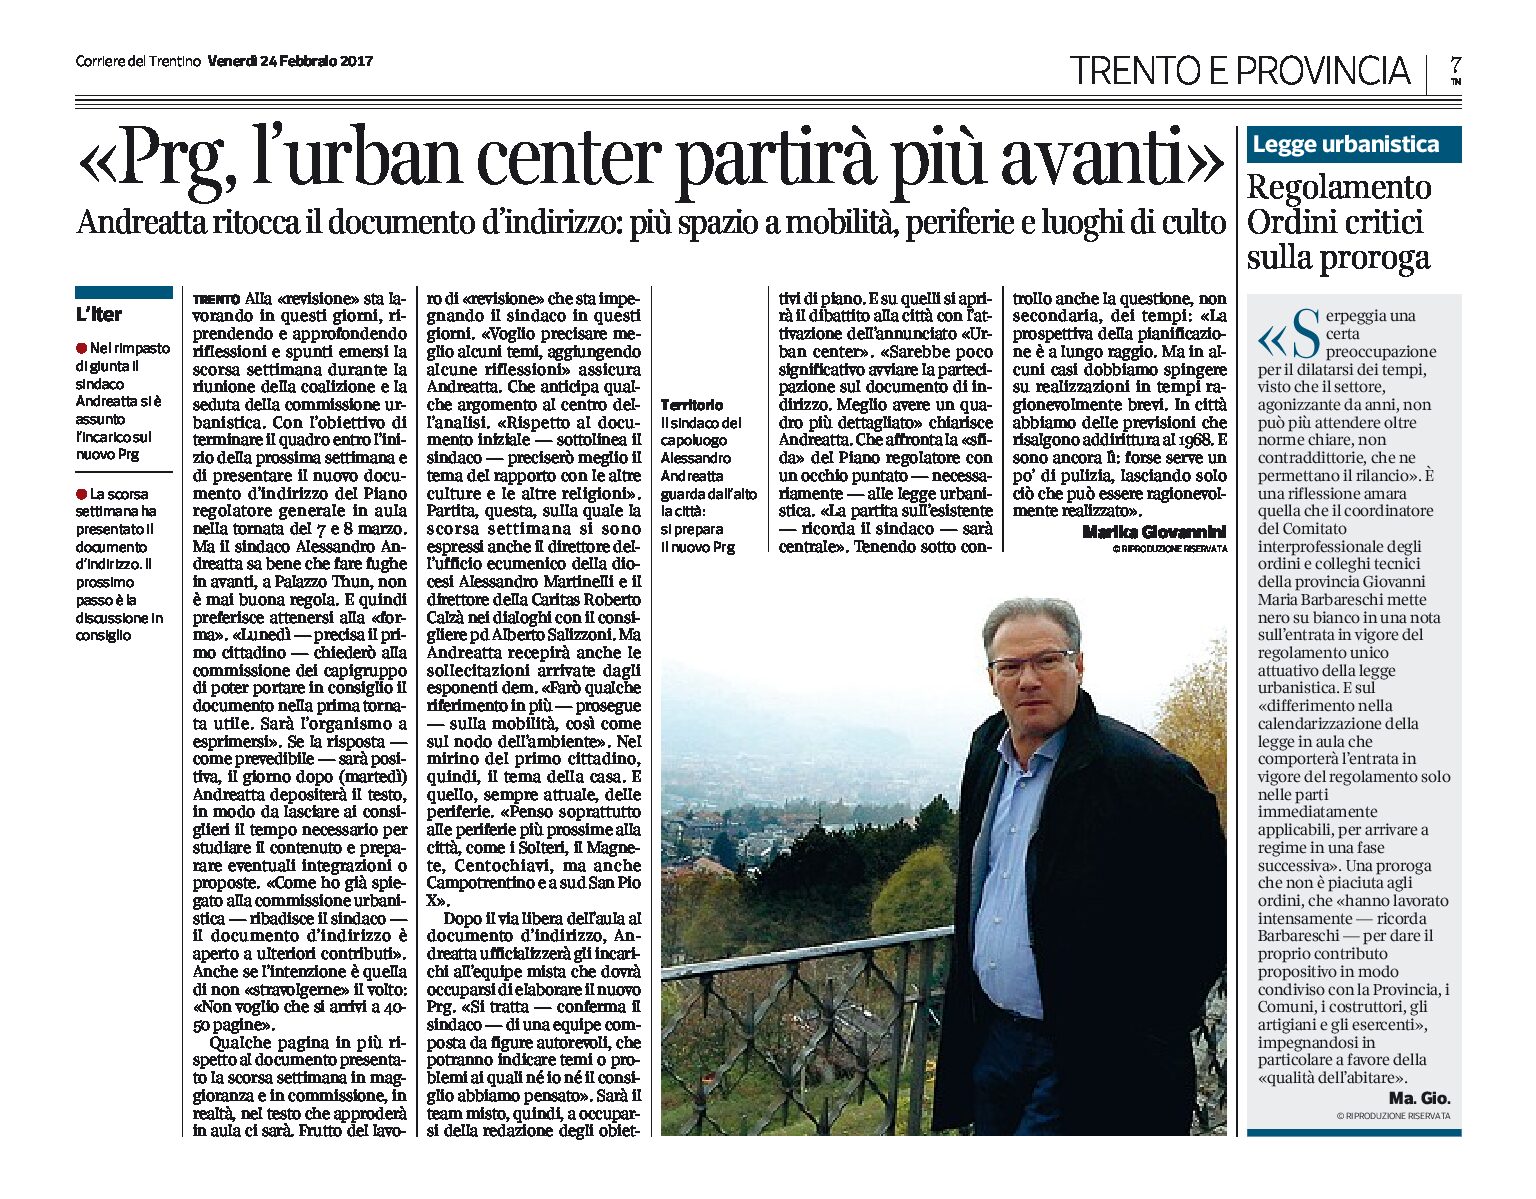 Trento, Prg: l’Urban center partirà più avanti. Più spazio a mobilità e periferie